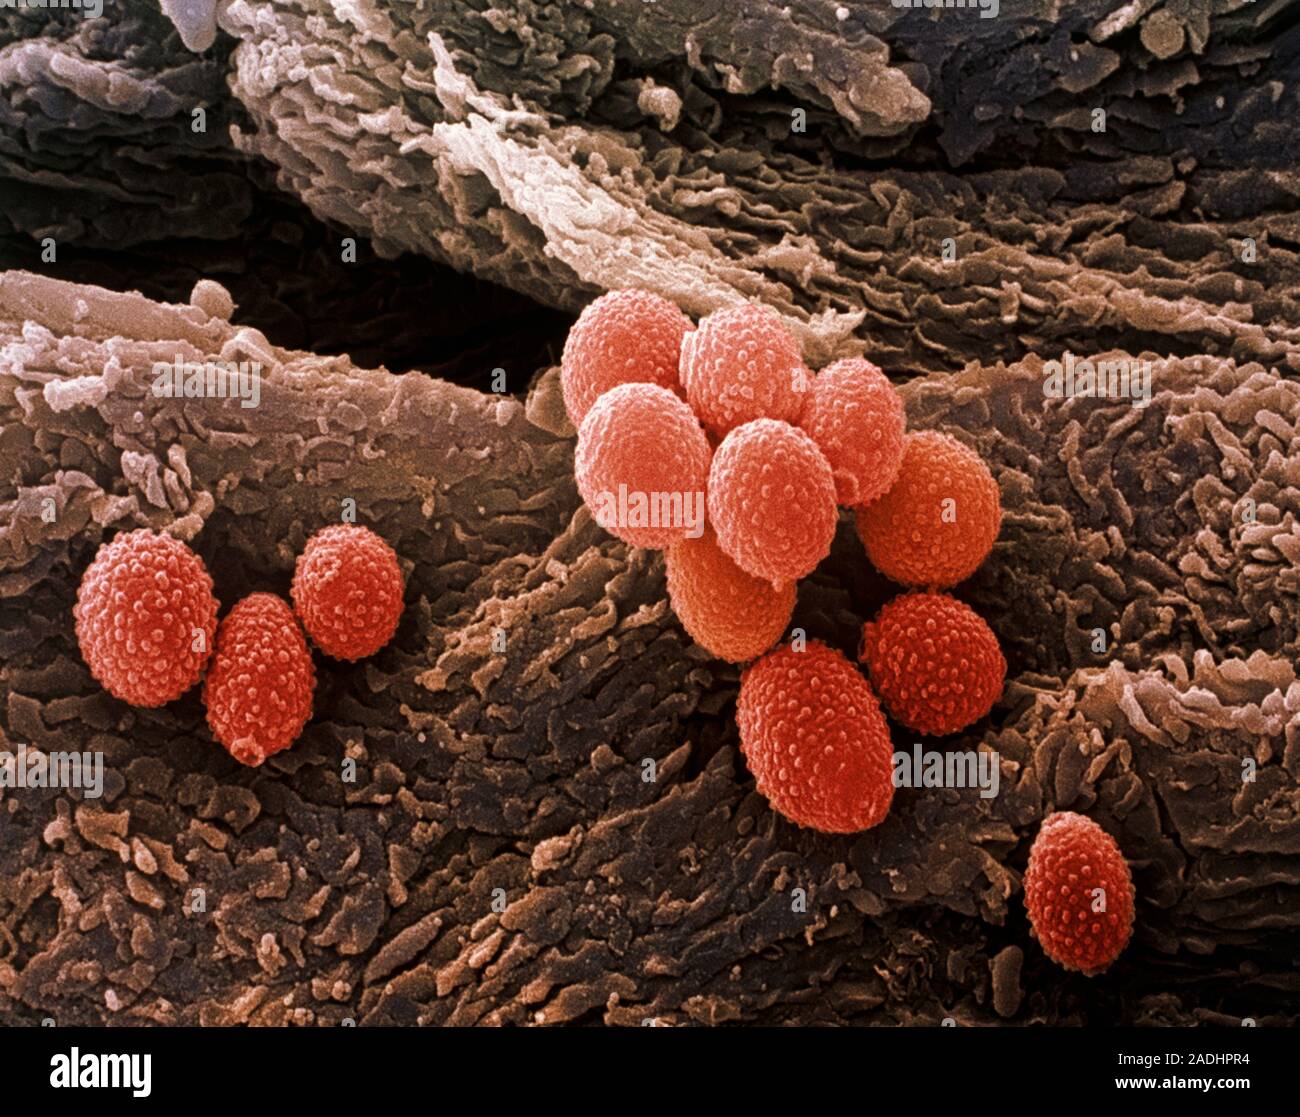 На коже обнаружены споры. Микоз стопы под микроскопом. Грибок ногтей под микроскопом. Грибы кожи под микроскопом. Грибок кожи под микроскопом.